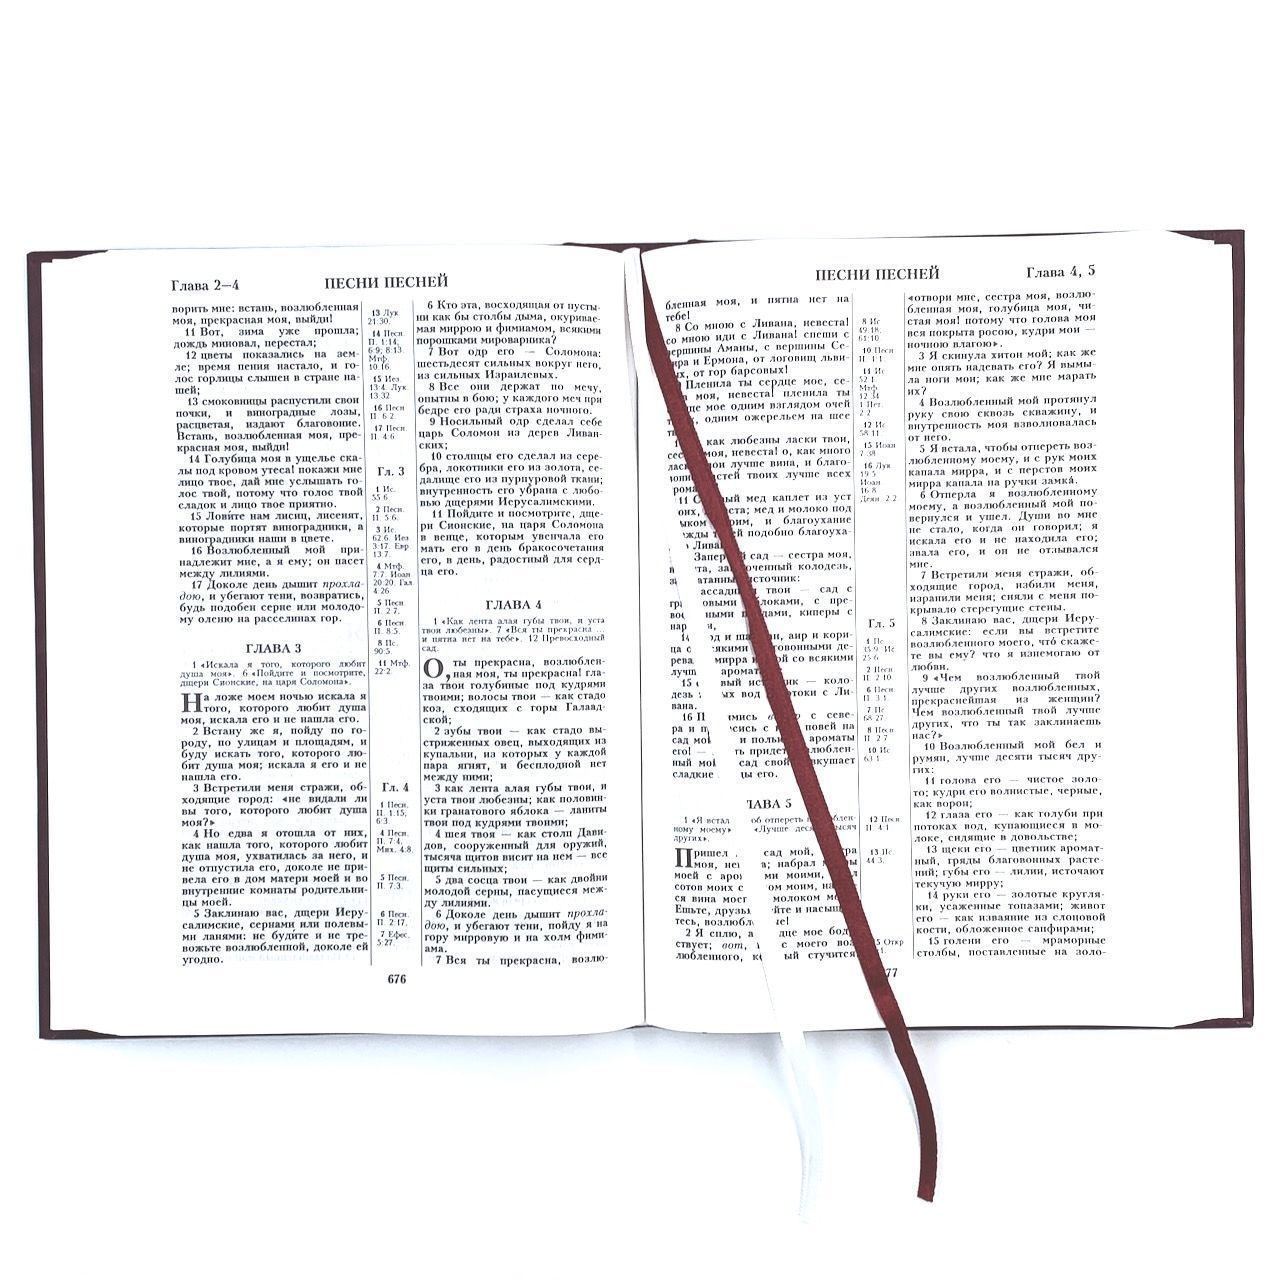 Библия 076 код 23076-2,  надпись "Библия" твердый переплет,  цвет бордо, размер 170x240 мм